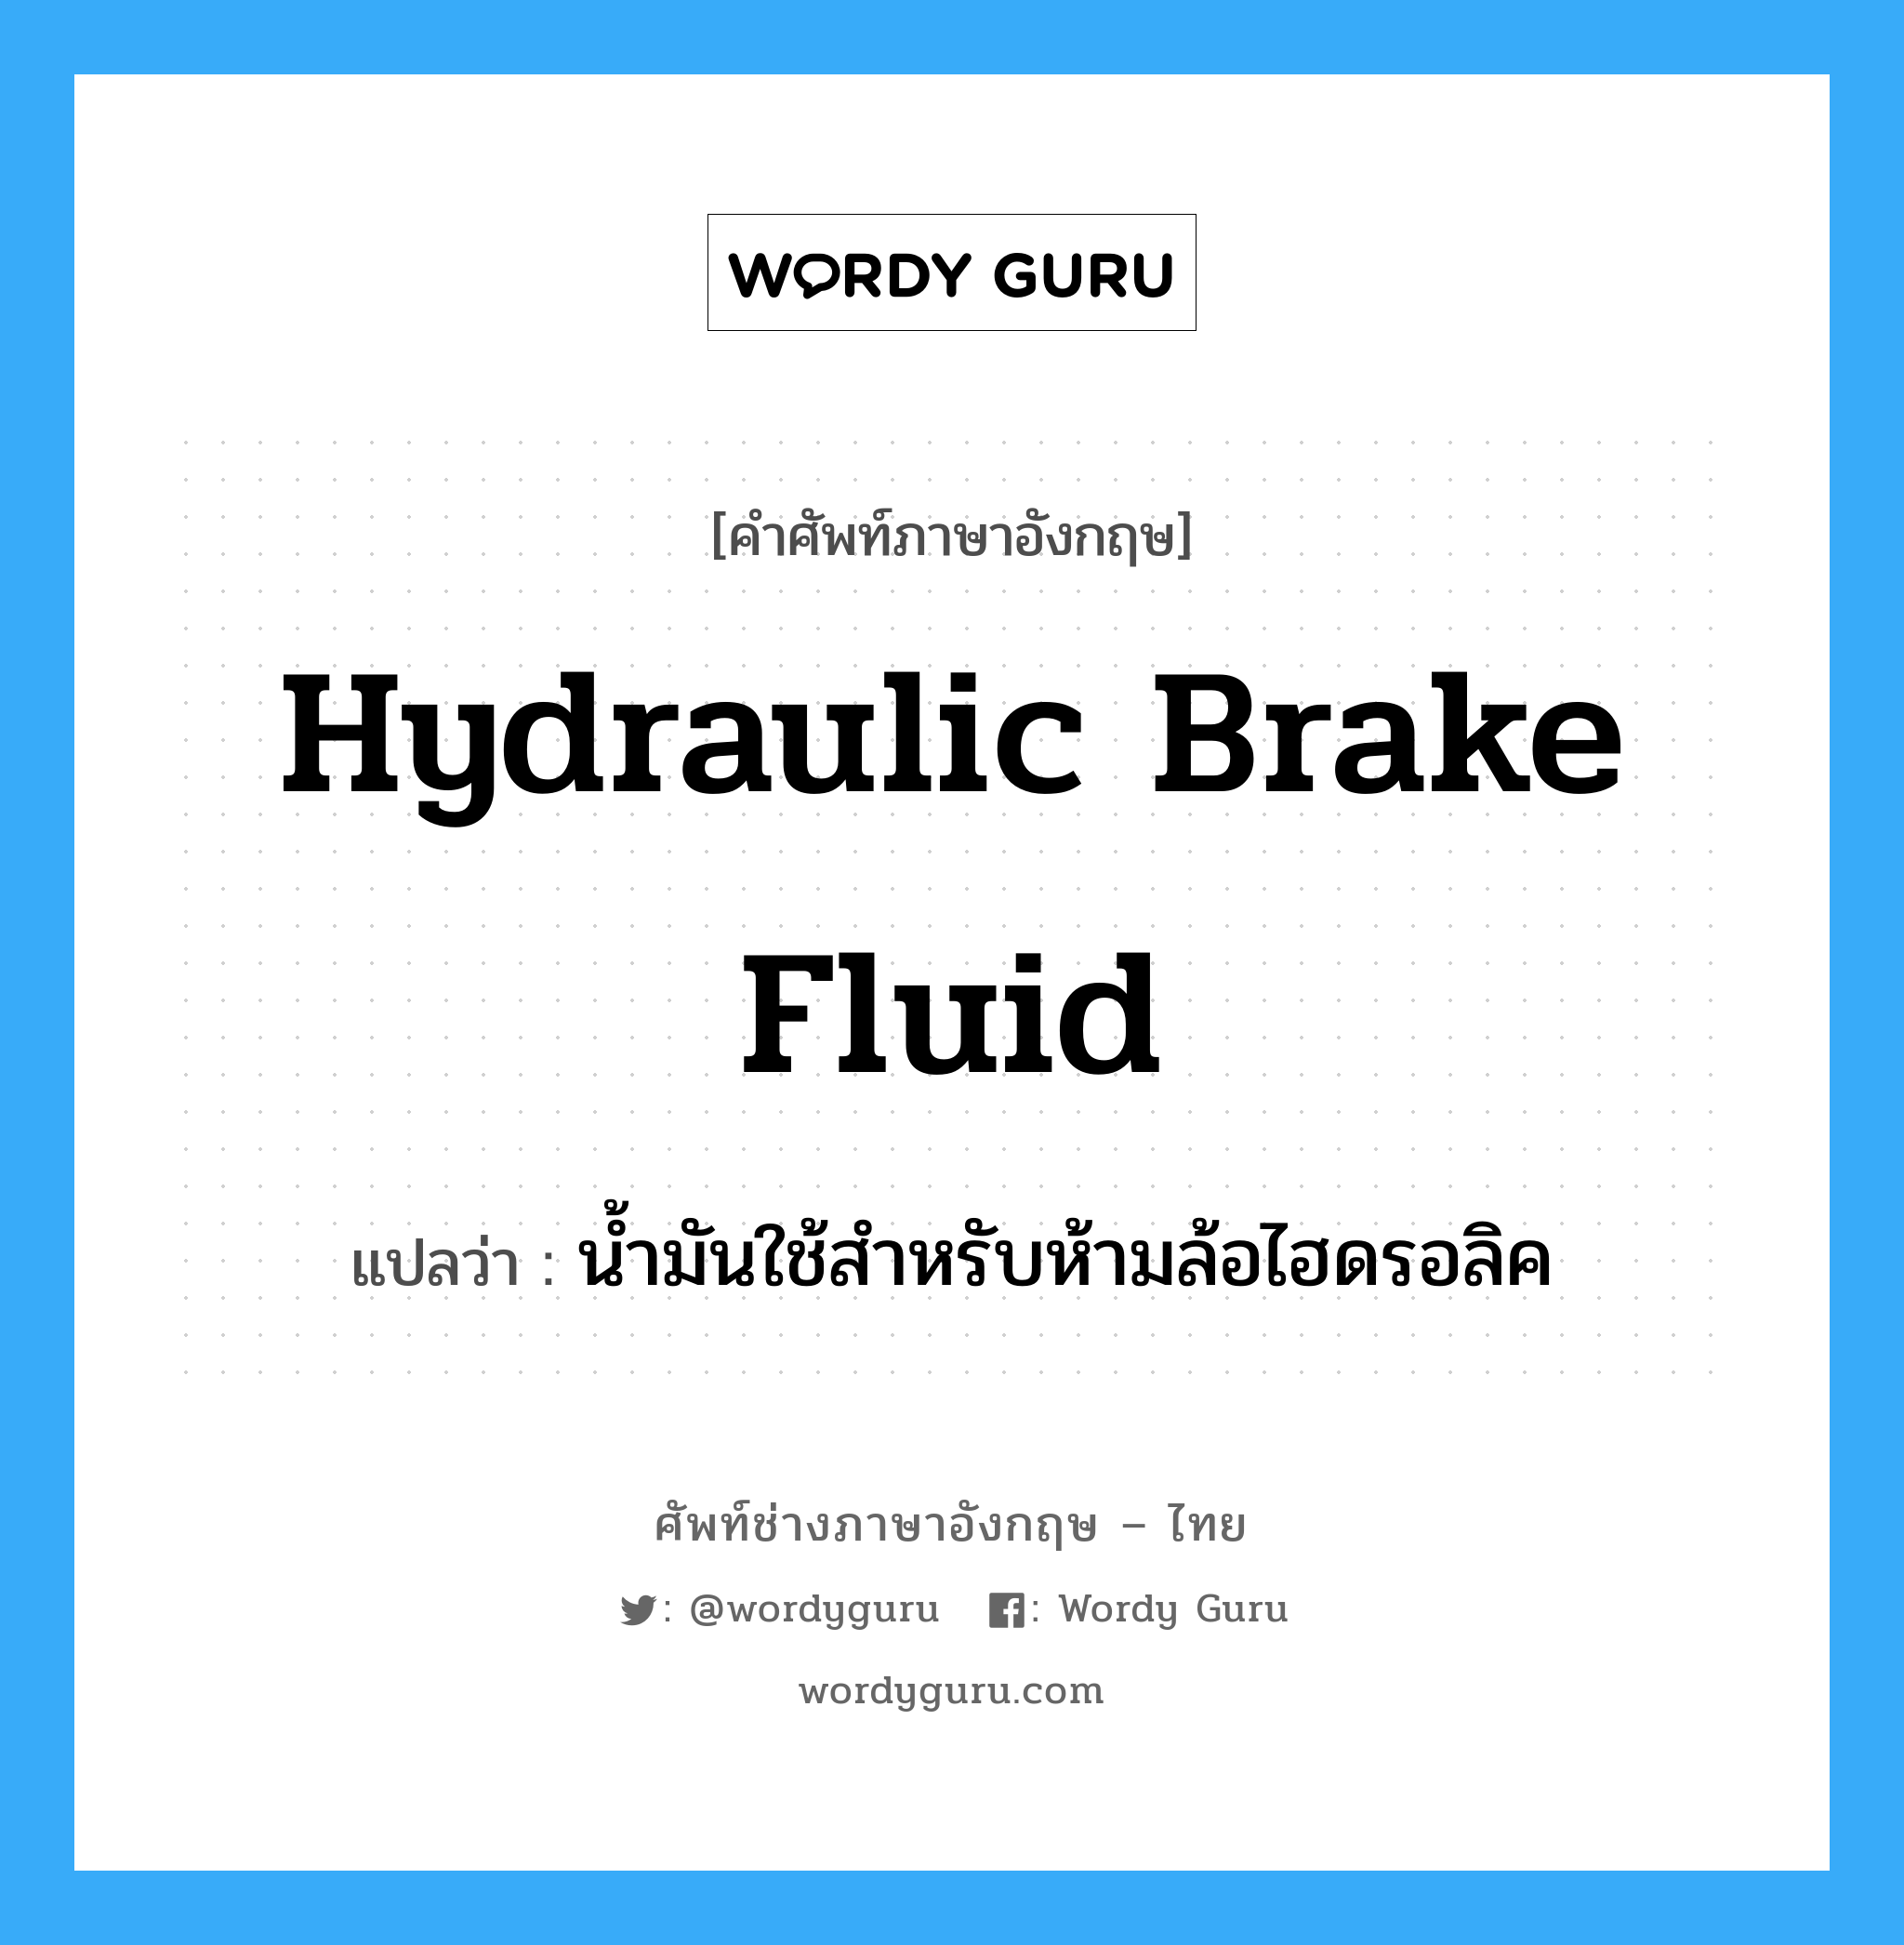 น้ำมันใช้สำหรับห้ามล้อไฮดรอลิค ภาษาอังกฤษ?, คำศัพท์ช่างภาษาอังกฤษ - ไทย น้ำมันใช้สำหรับห้ามล้อไฮดรอลิค คำศัพท์ภาษาอังกฤษ น้ำมันใช้สำหรับห้ามล้อไฮดรอลิค แปลว่า hydraulic brake fluid